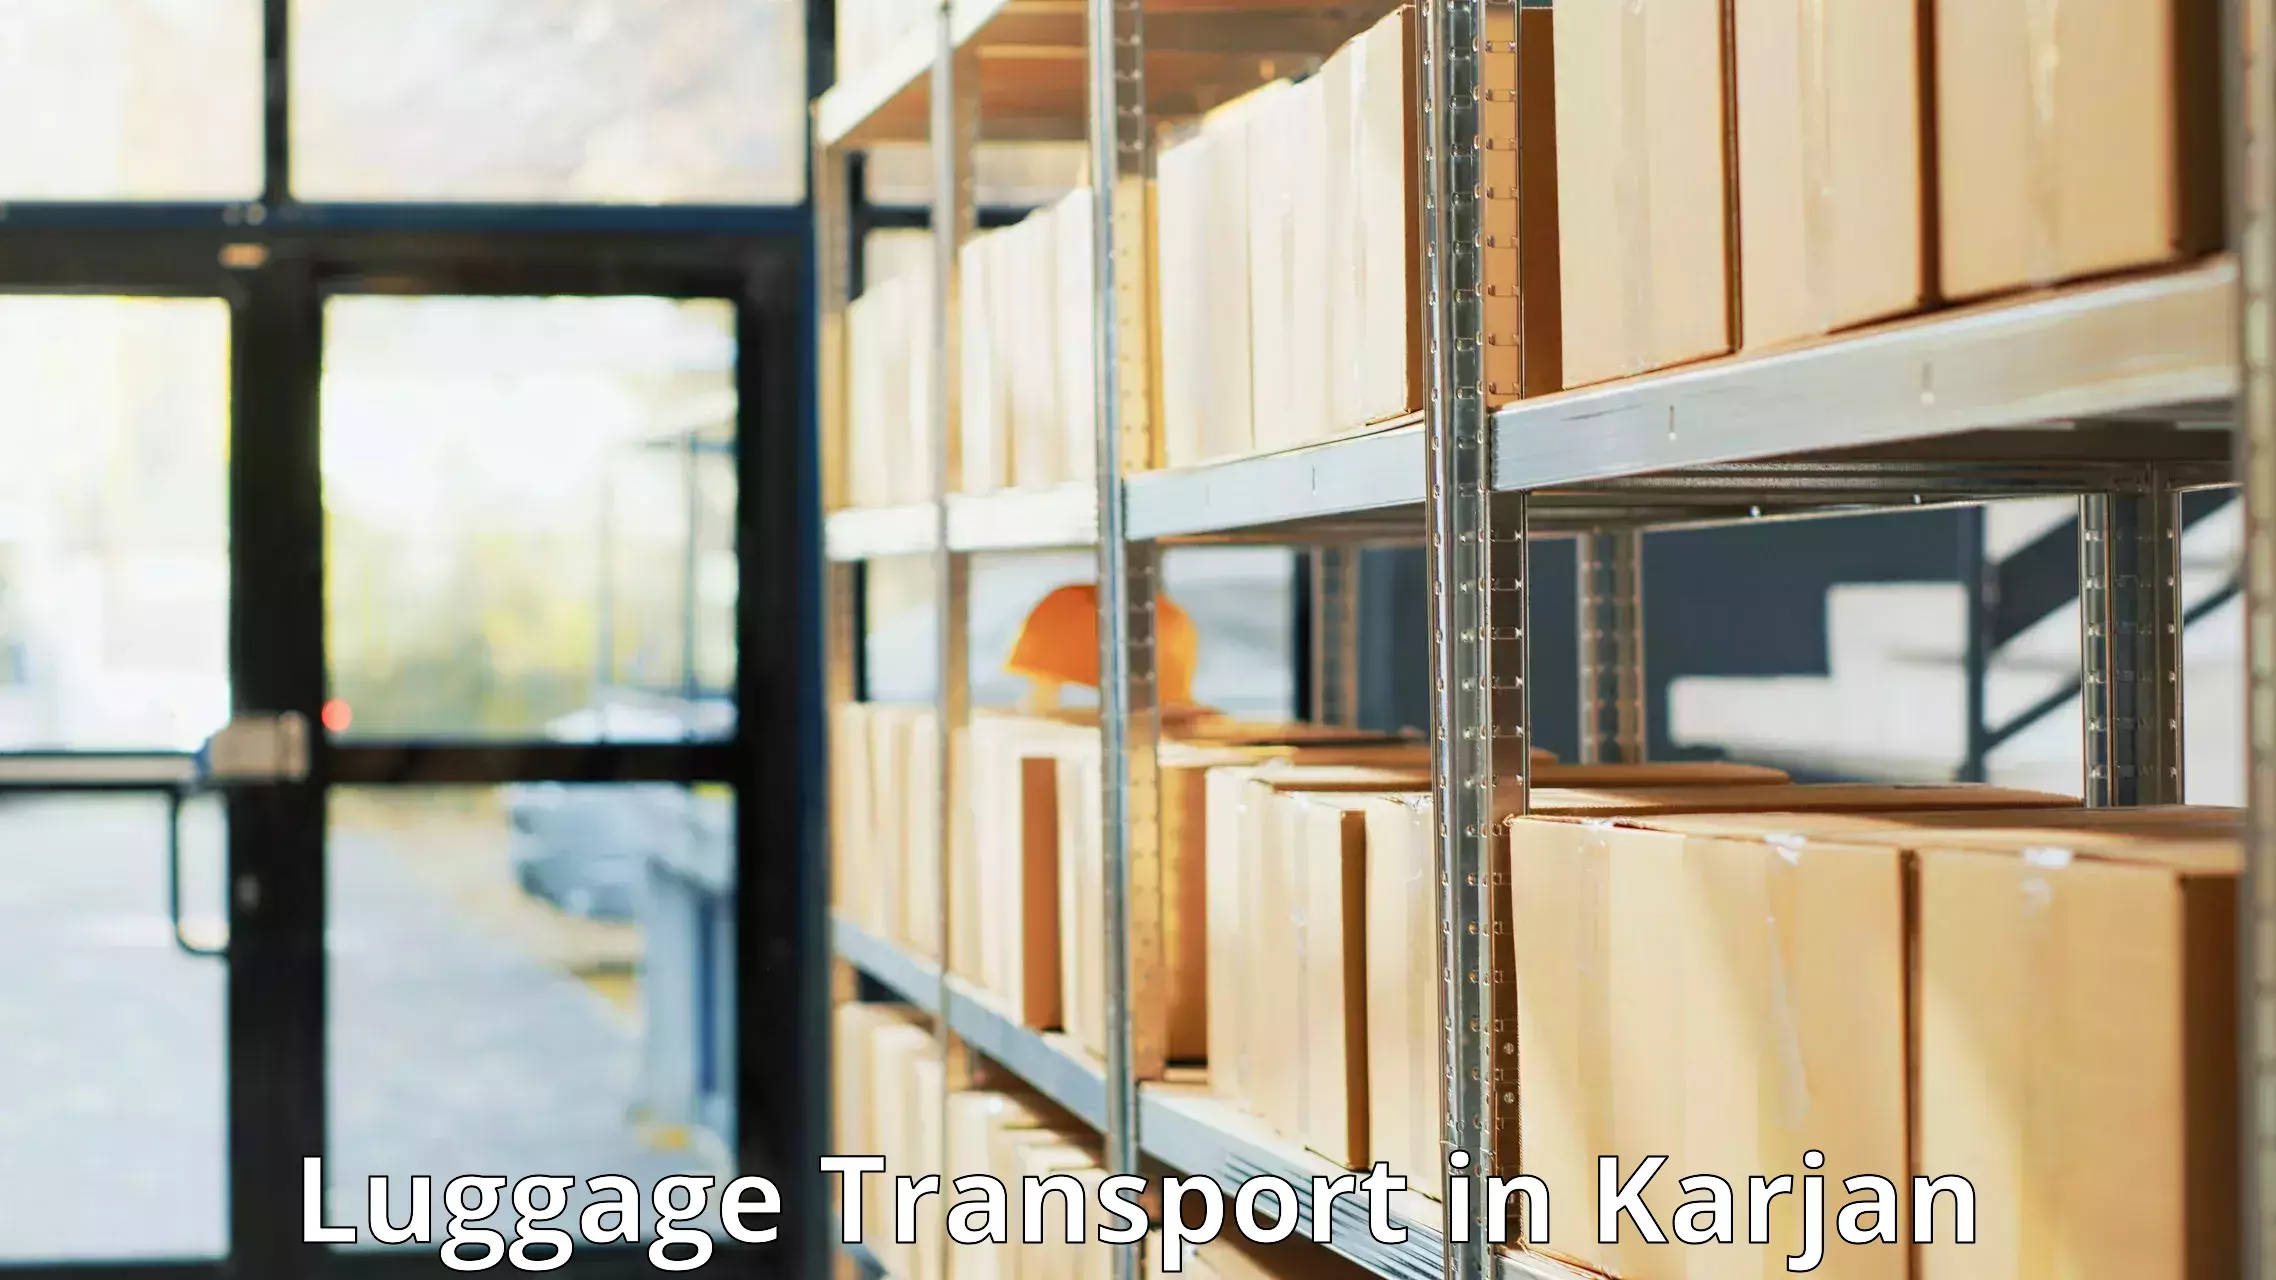 Express baggage shipping in Karjan